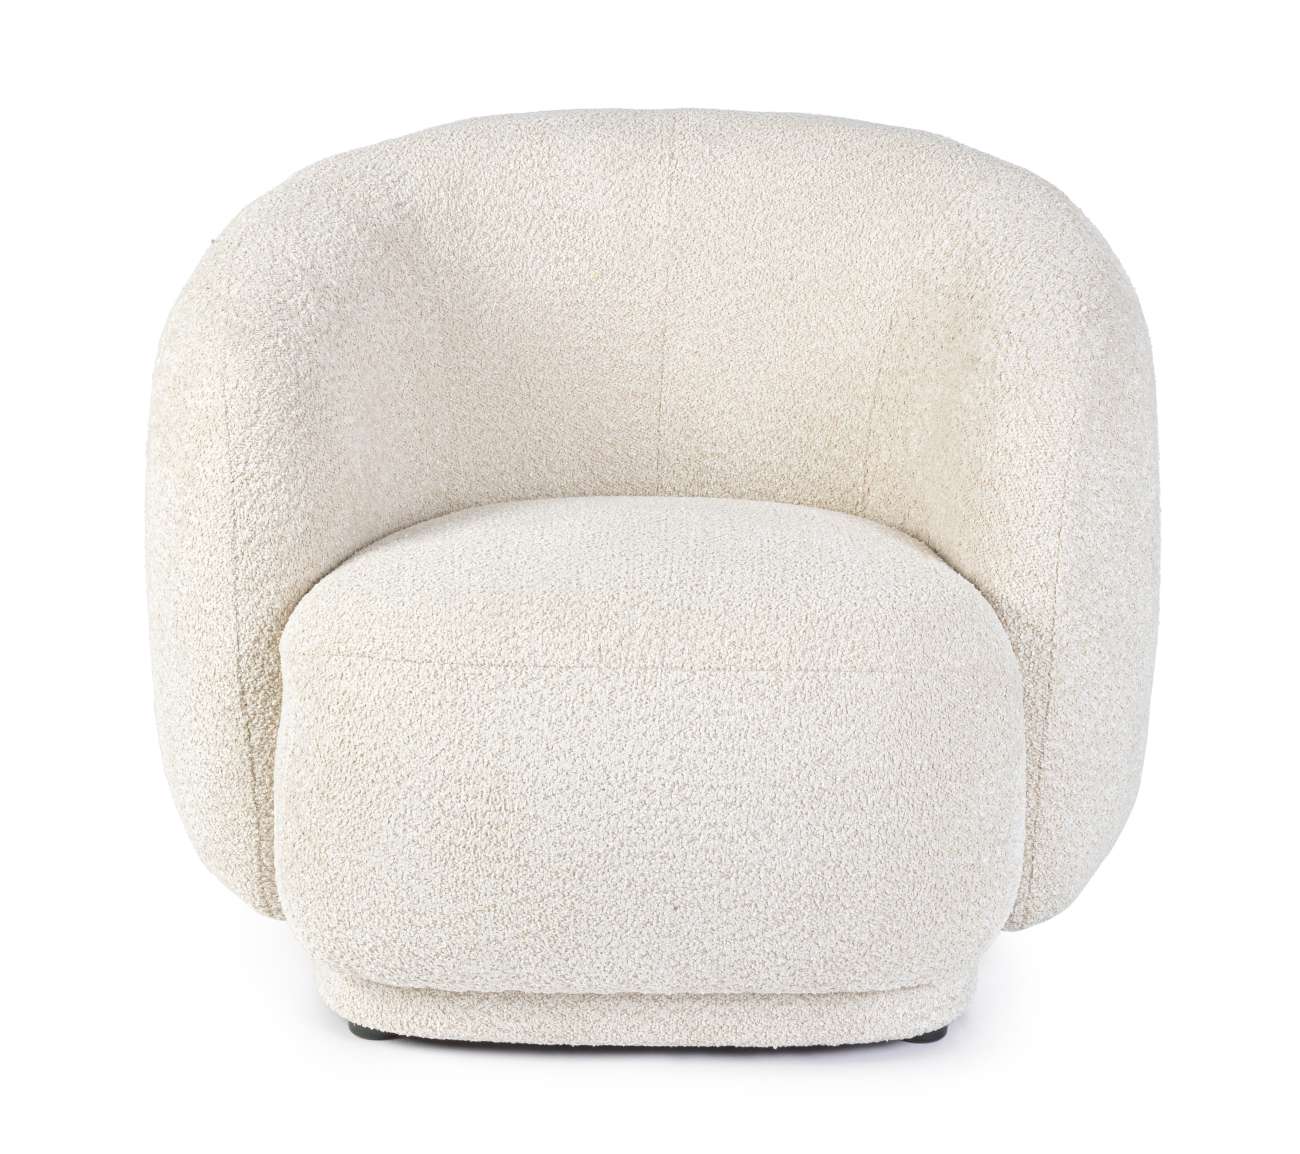 Der Sessel Tecla überzeugt mit seinem modernen Stil. Gefertigt wurde er aus Boucle-Stoff, welcher einen natürlichen Farbton besitzt. Der Sessel besitzt eine Sitzhöhe von 43 cm.